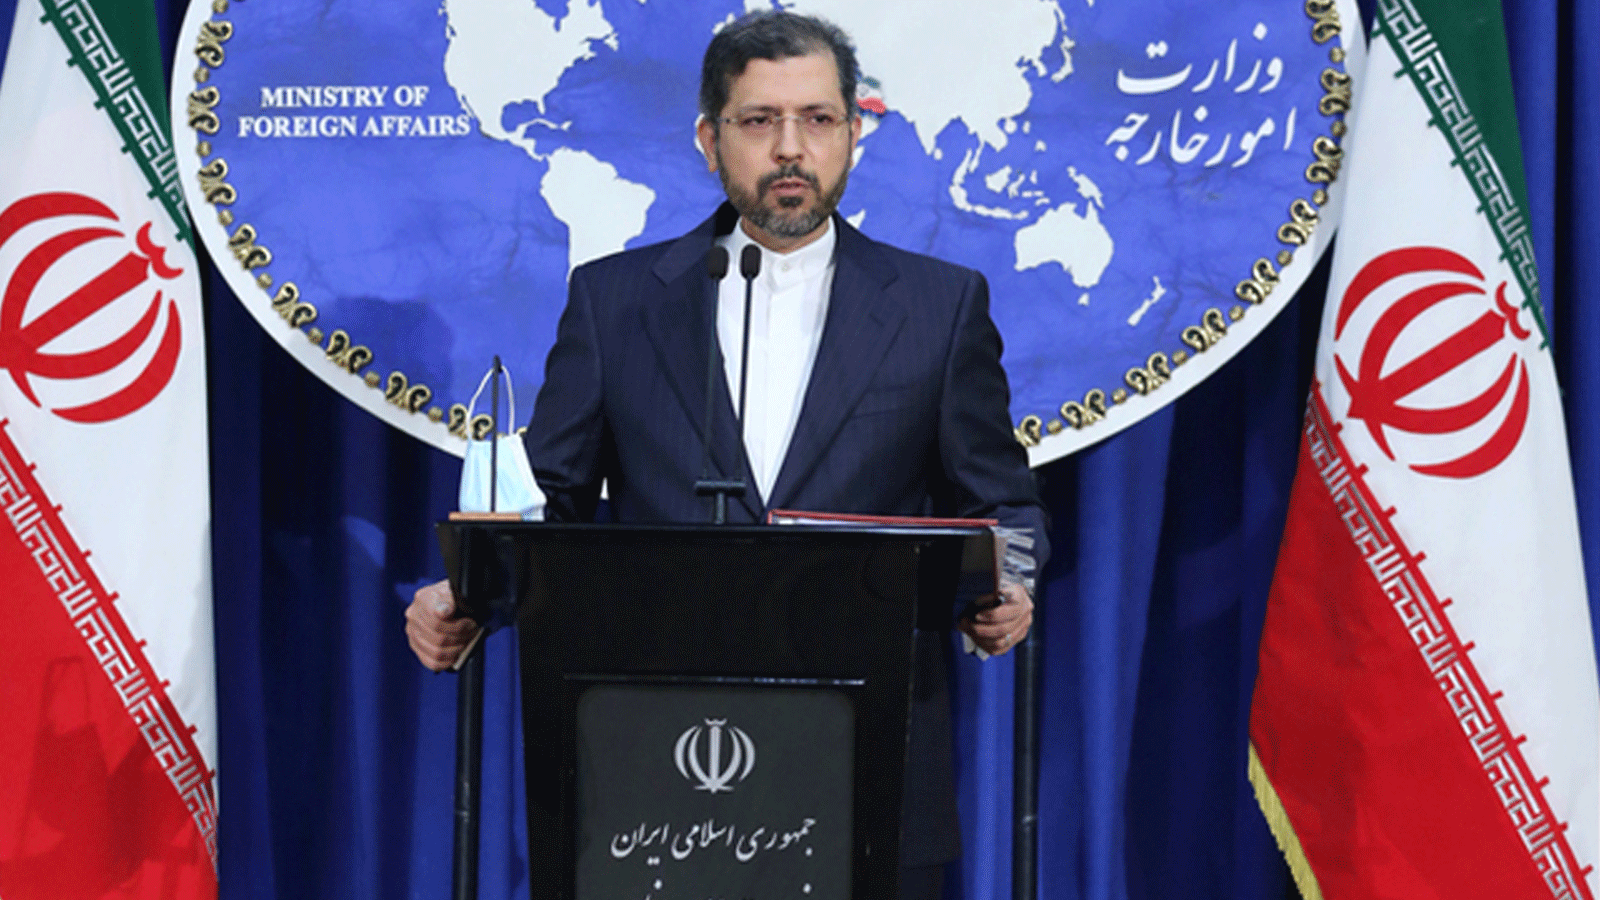 صورة للمتحدث باسم الخارجية الإيرانية نشرتها الصفحة الرسمية للوزارة على 